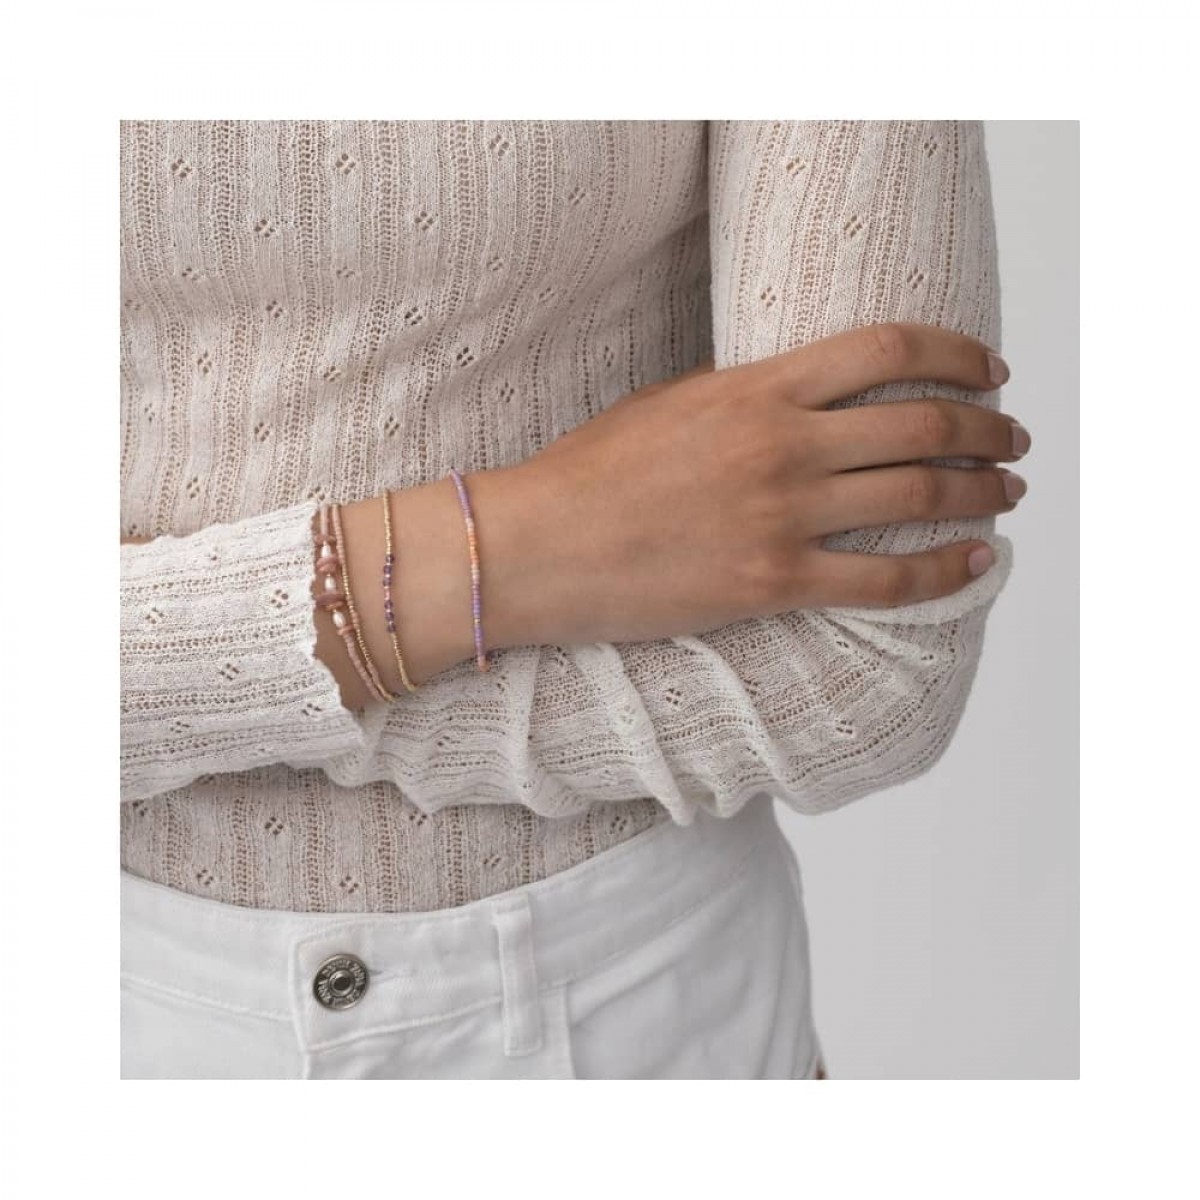 anni lu bead & gem bracelet - pink lavender - model arm